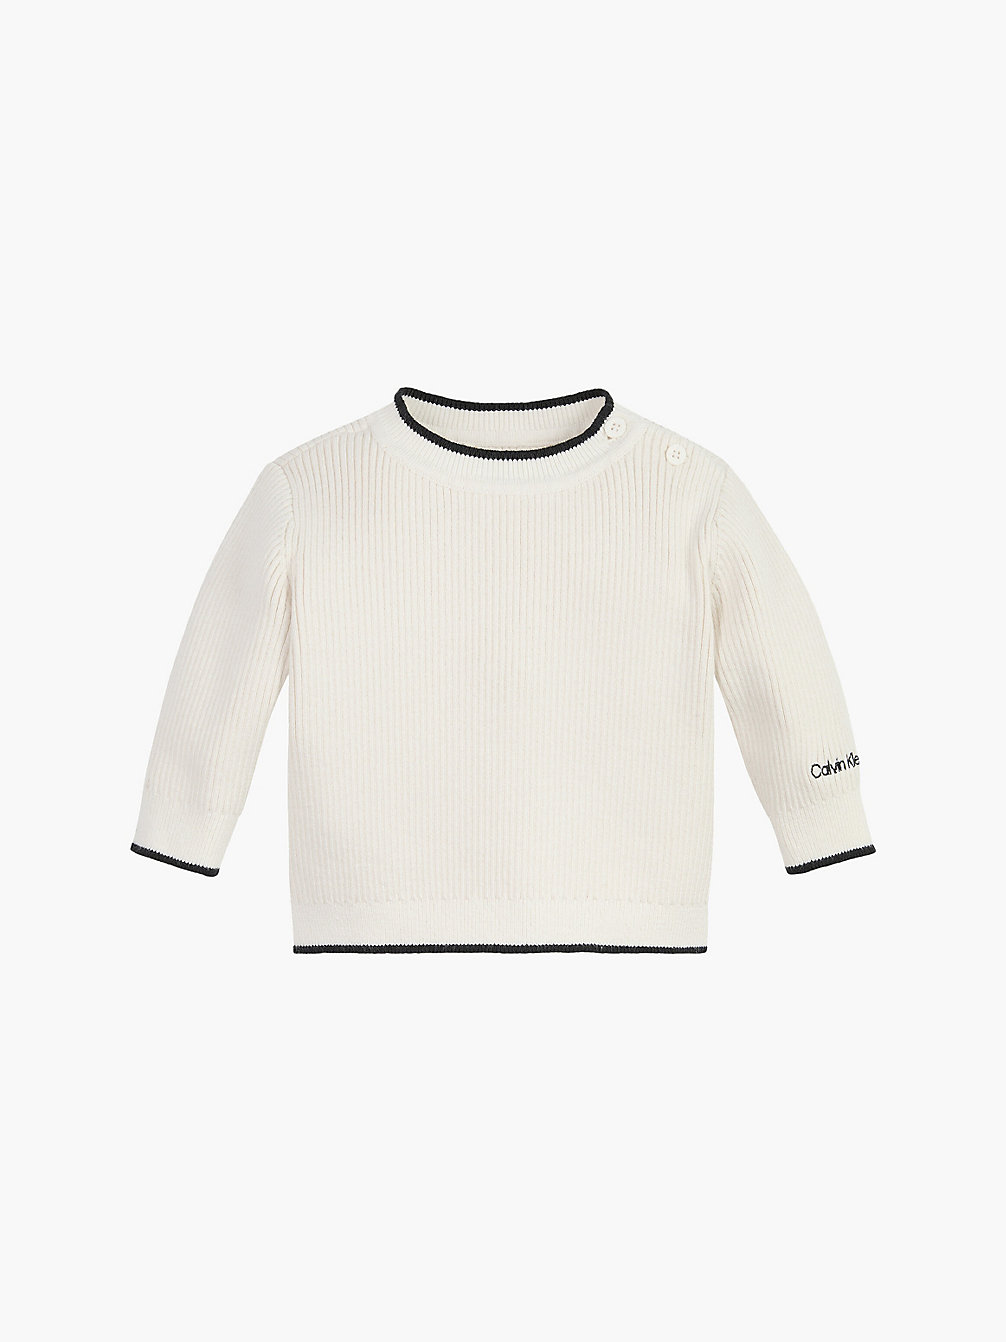 IVORY Baby-Pullover Aus Rippstrick undefined undefined Calvin Klein